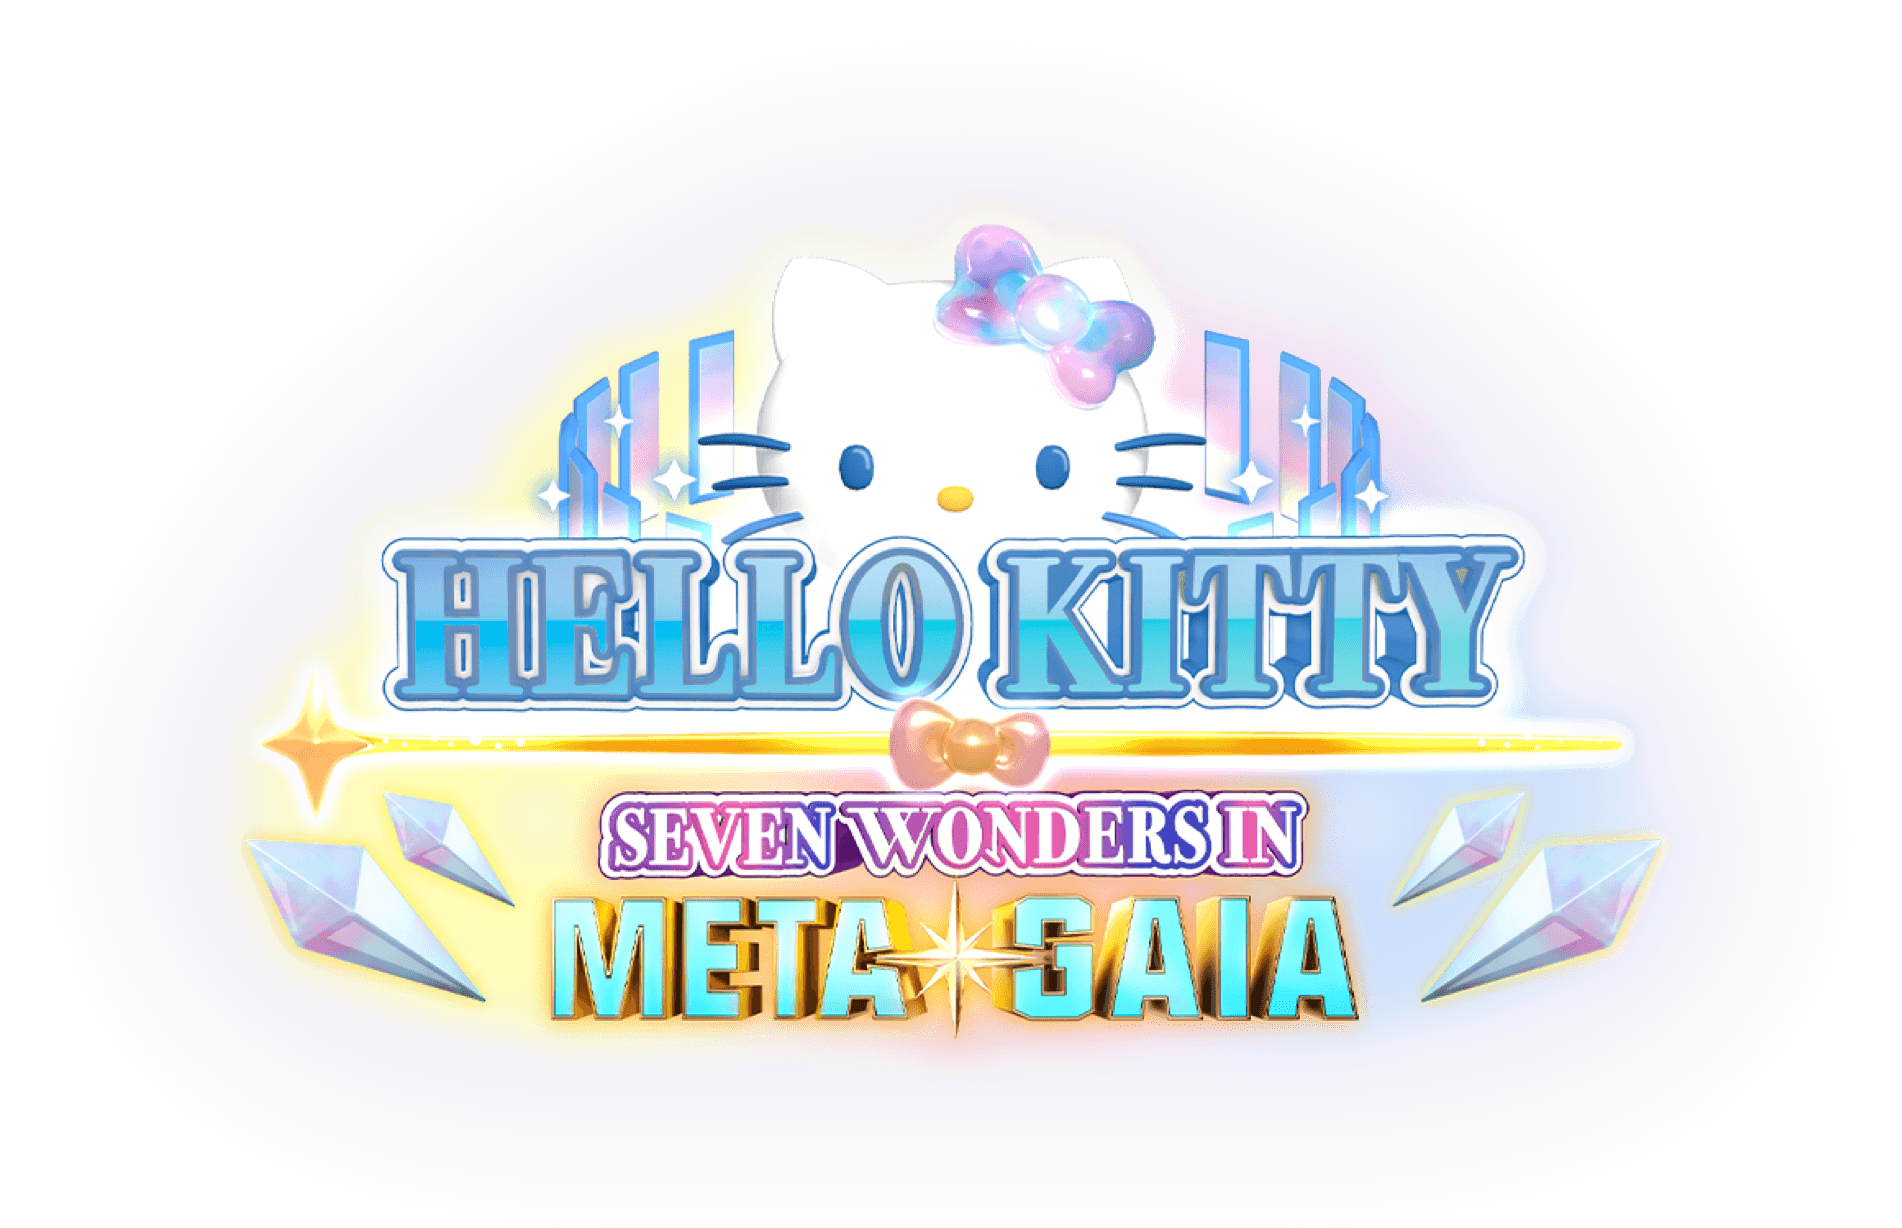 Nova' Hello Kitty quer conquistar o metaverso